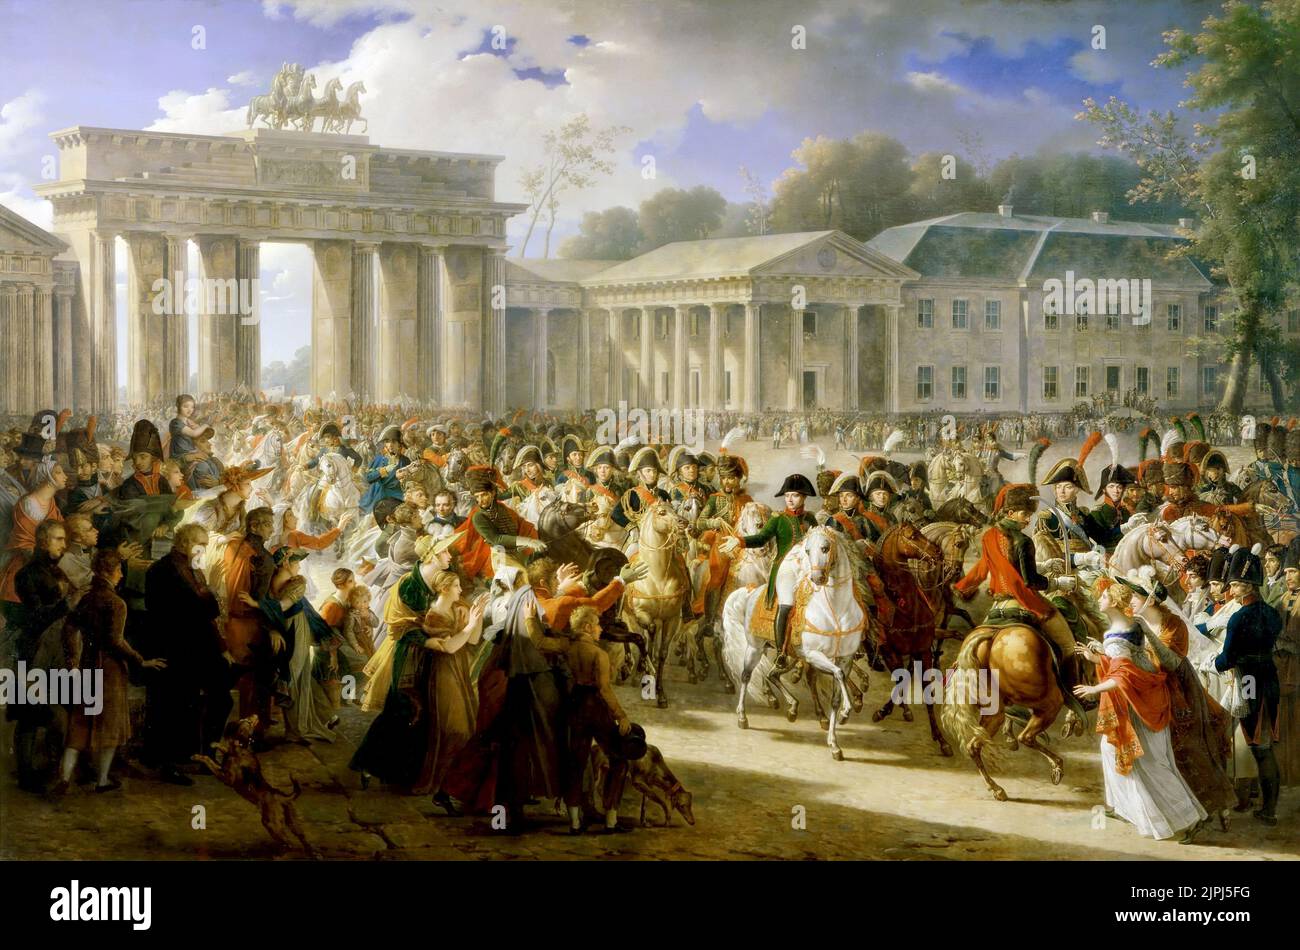 Dopo aver sconfitto le forze prussiane a Jena, l'esercito francese entrò a Berlino il 27 ottobre 1806. Carlo Meynier Napoleone passando attraverso la porta di Brandeburgo dopo la battaglia di Jena-Auerstedt (1806). Dipinto da Charles Meynier nel 1810. Foto Stock